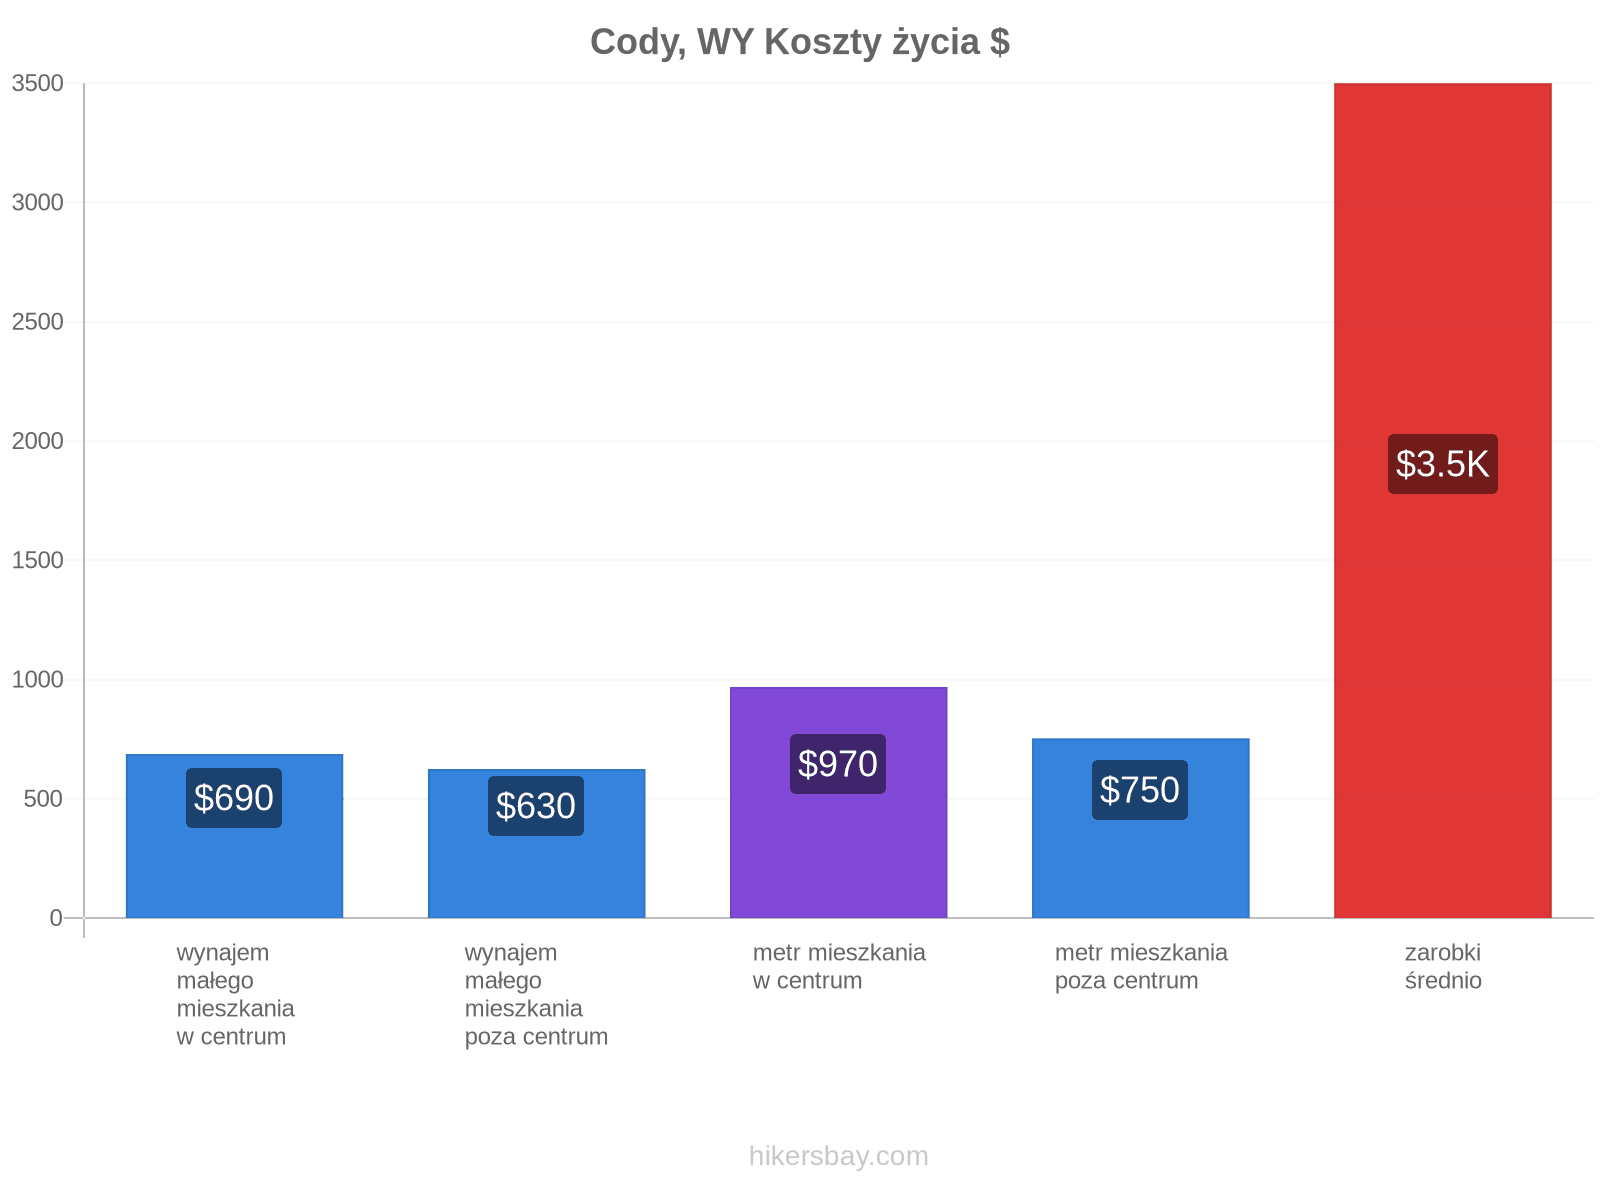 Cody, WY koszty życia hikersbay.com